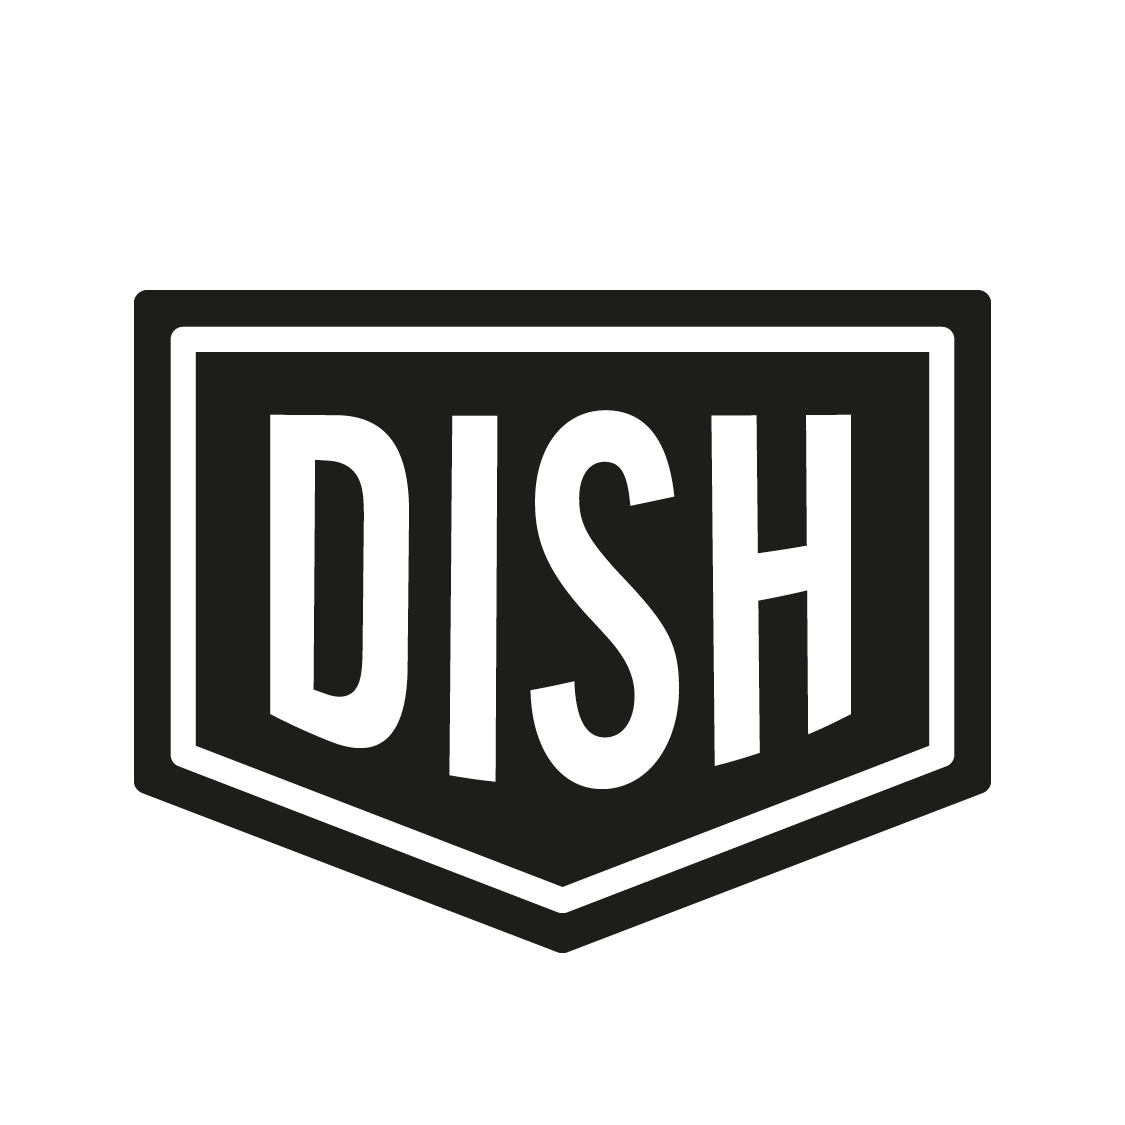 Dish Logo